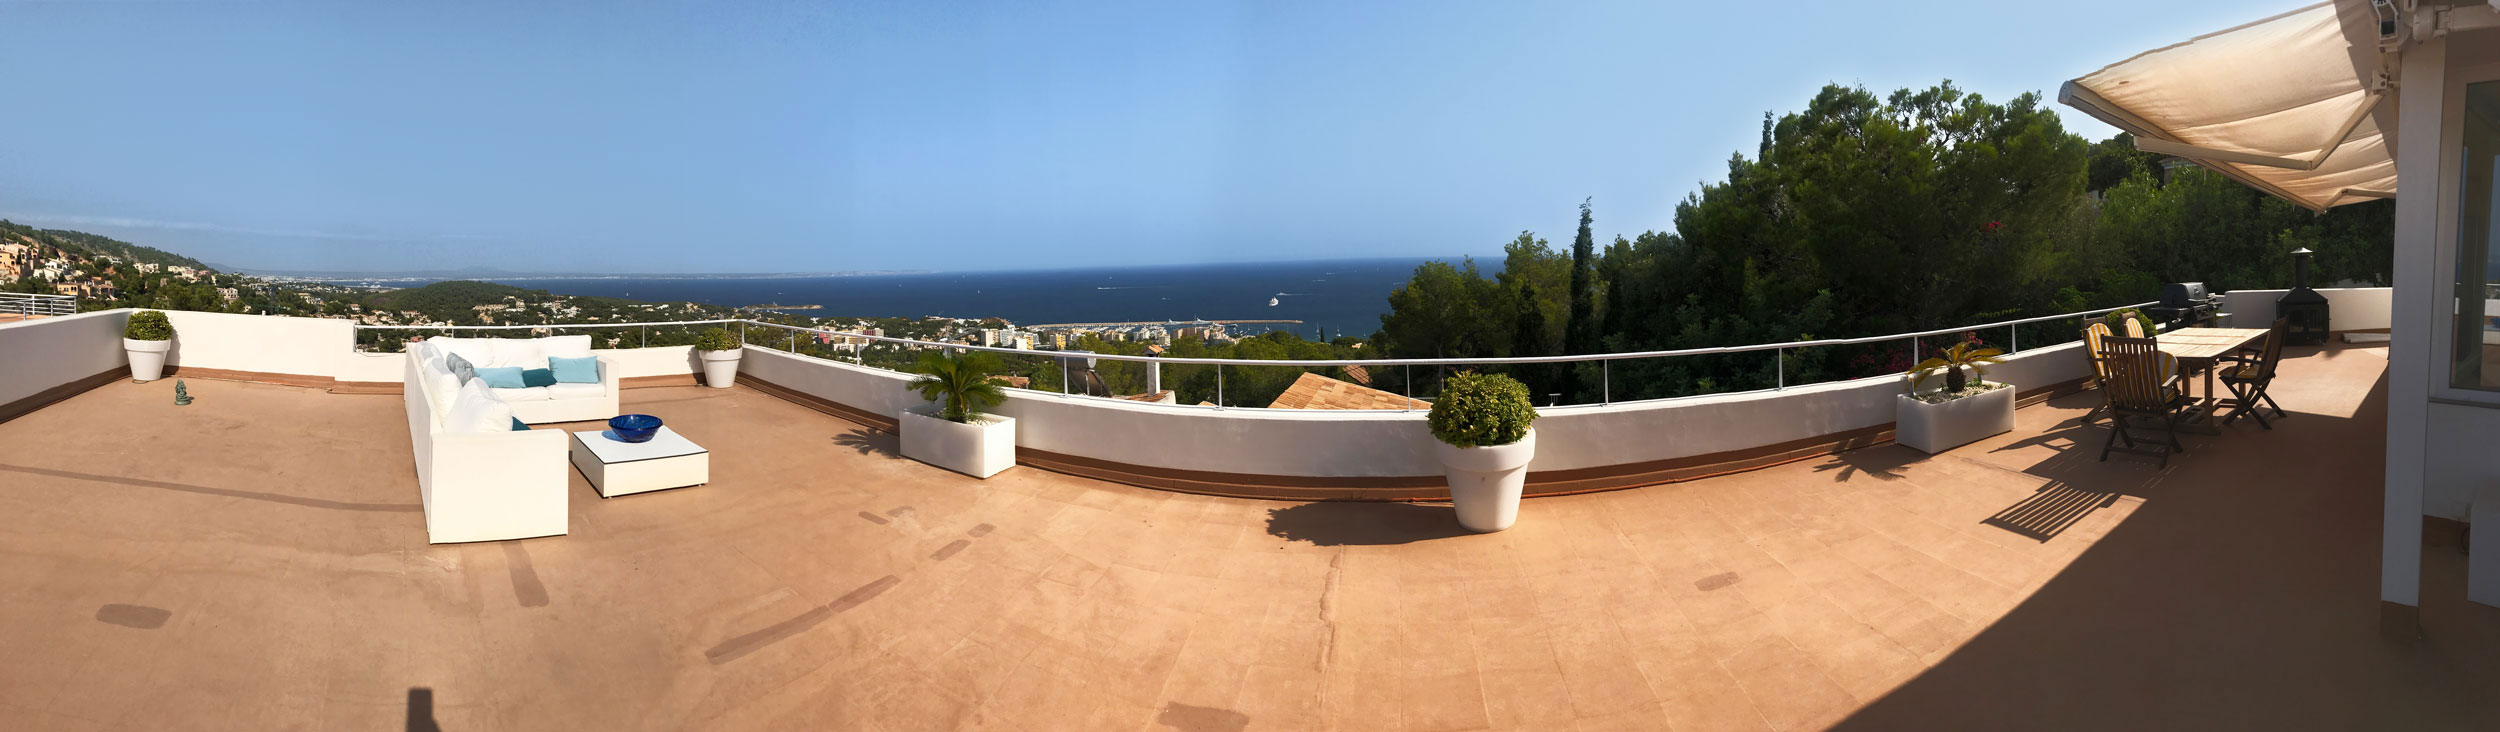 Panoramaausblick Terrasse